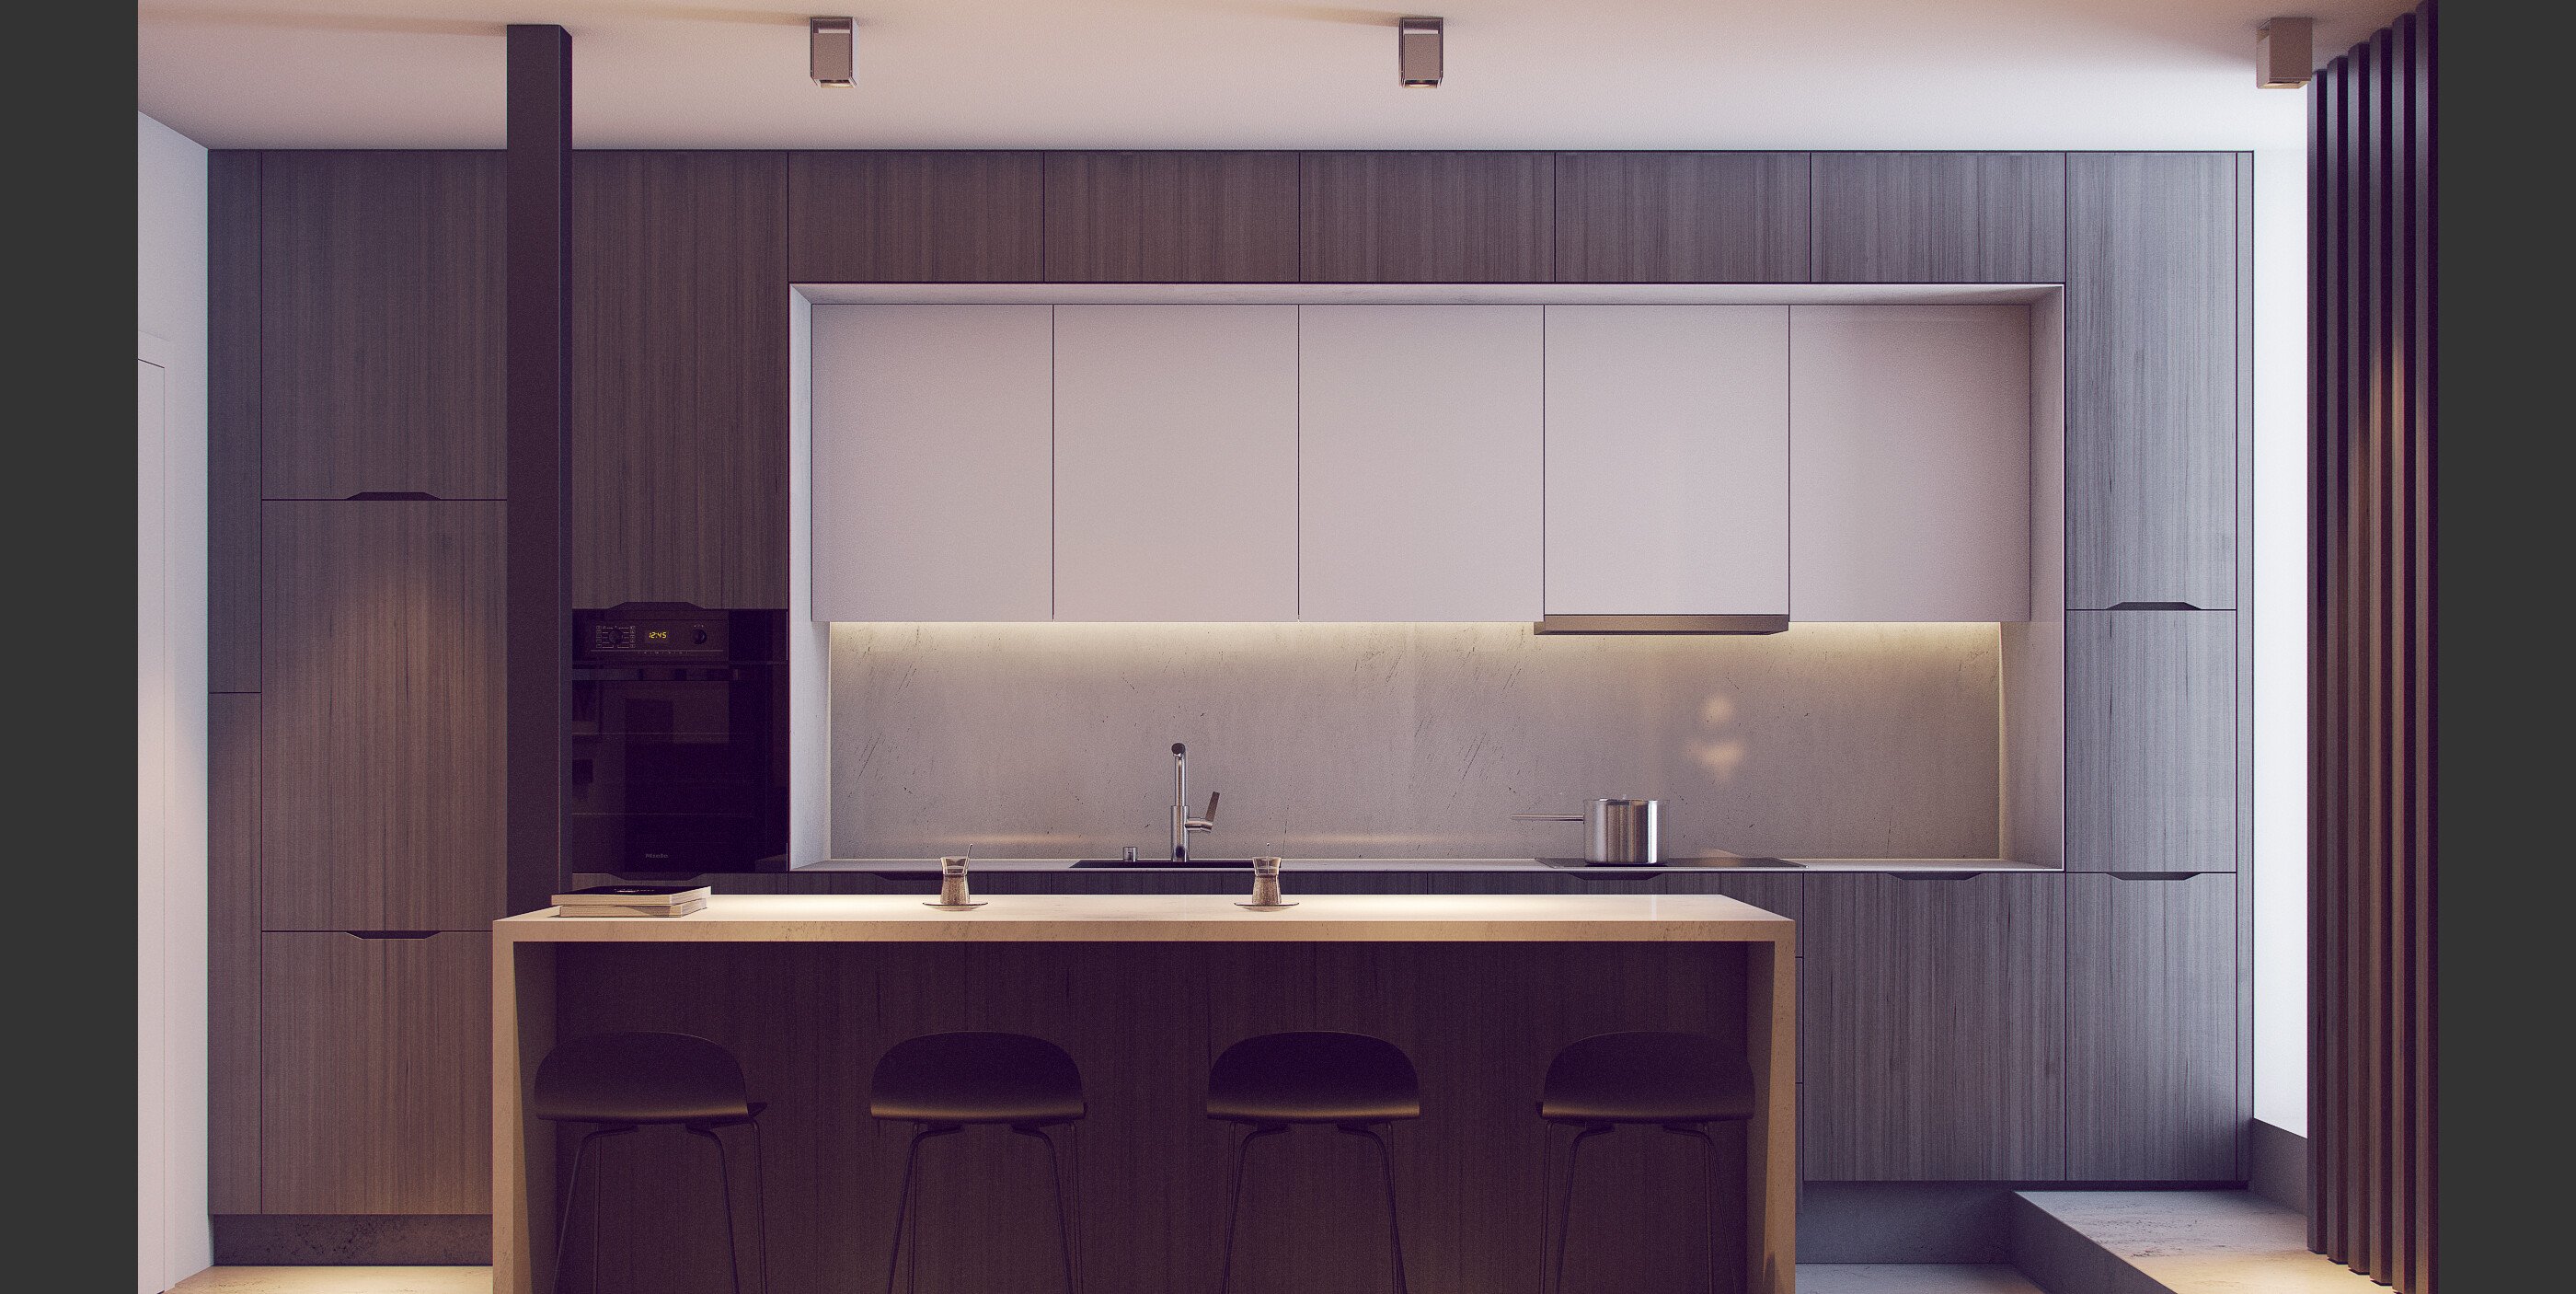 Online Kitchen Design interior design samples